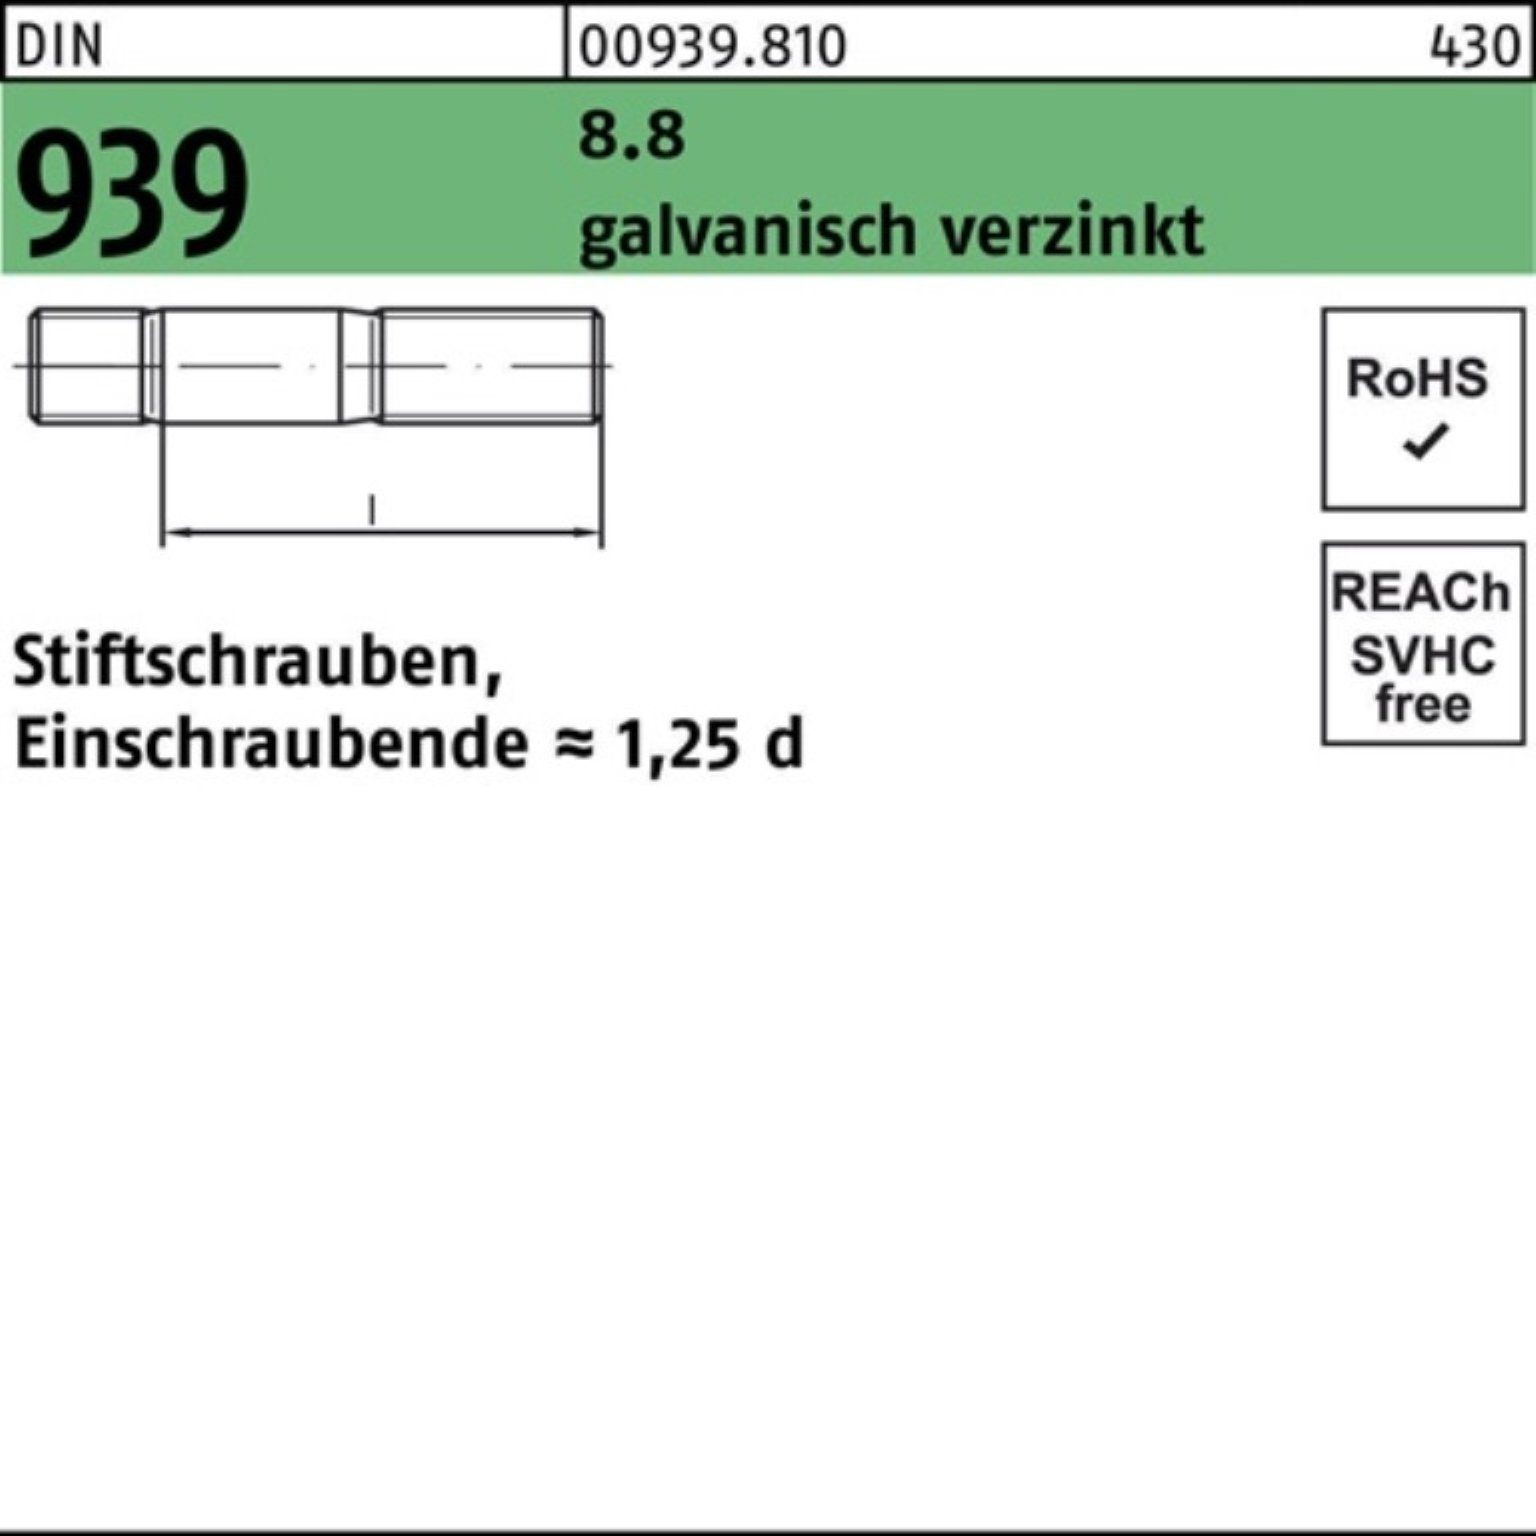 M20x45 DIN Stiftschraube Stiftschraube 100er 939 8.8 Einschraubende= galv.verz. Reyher Pack